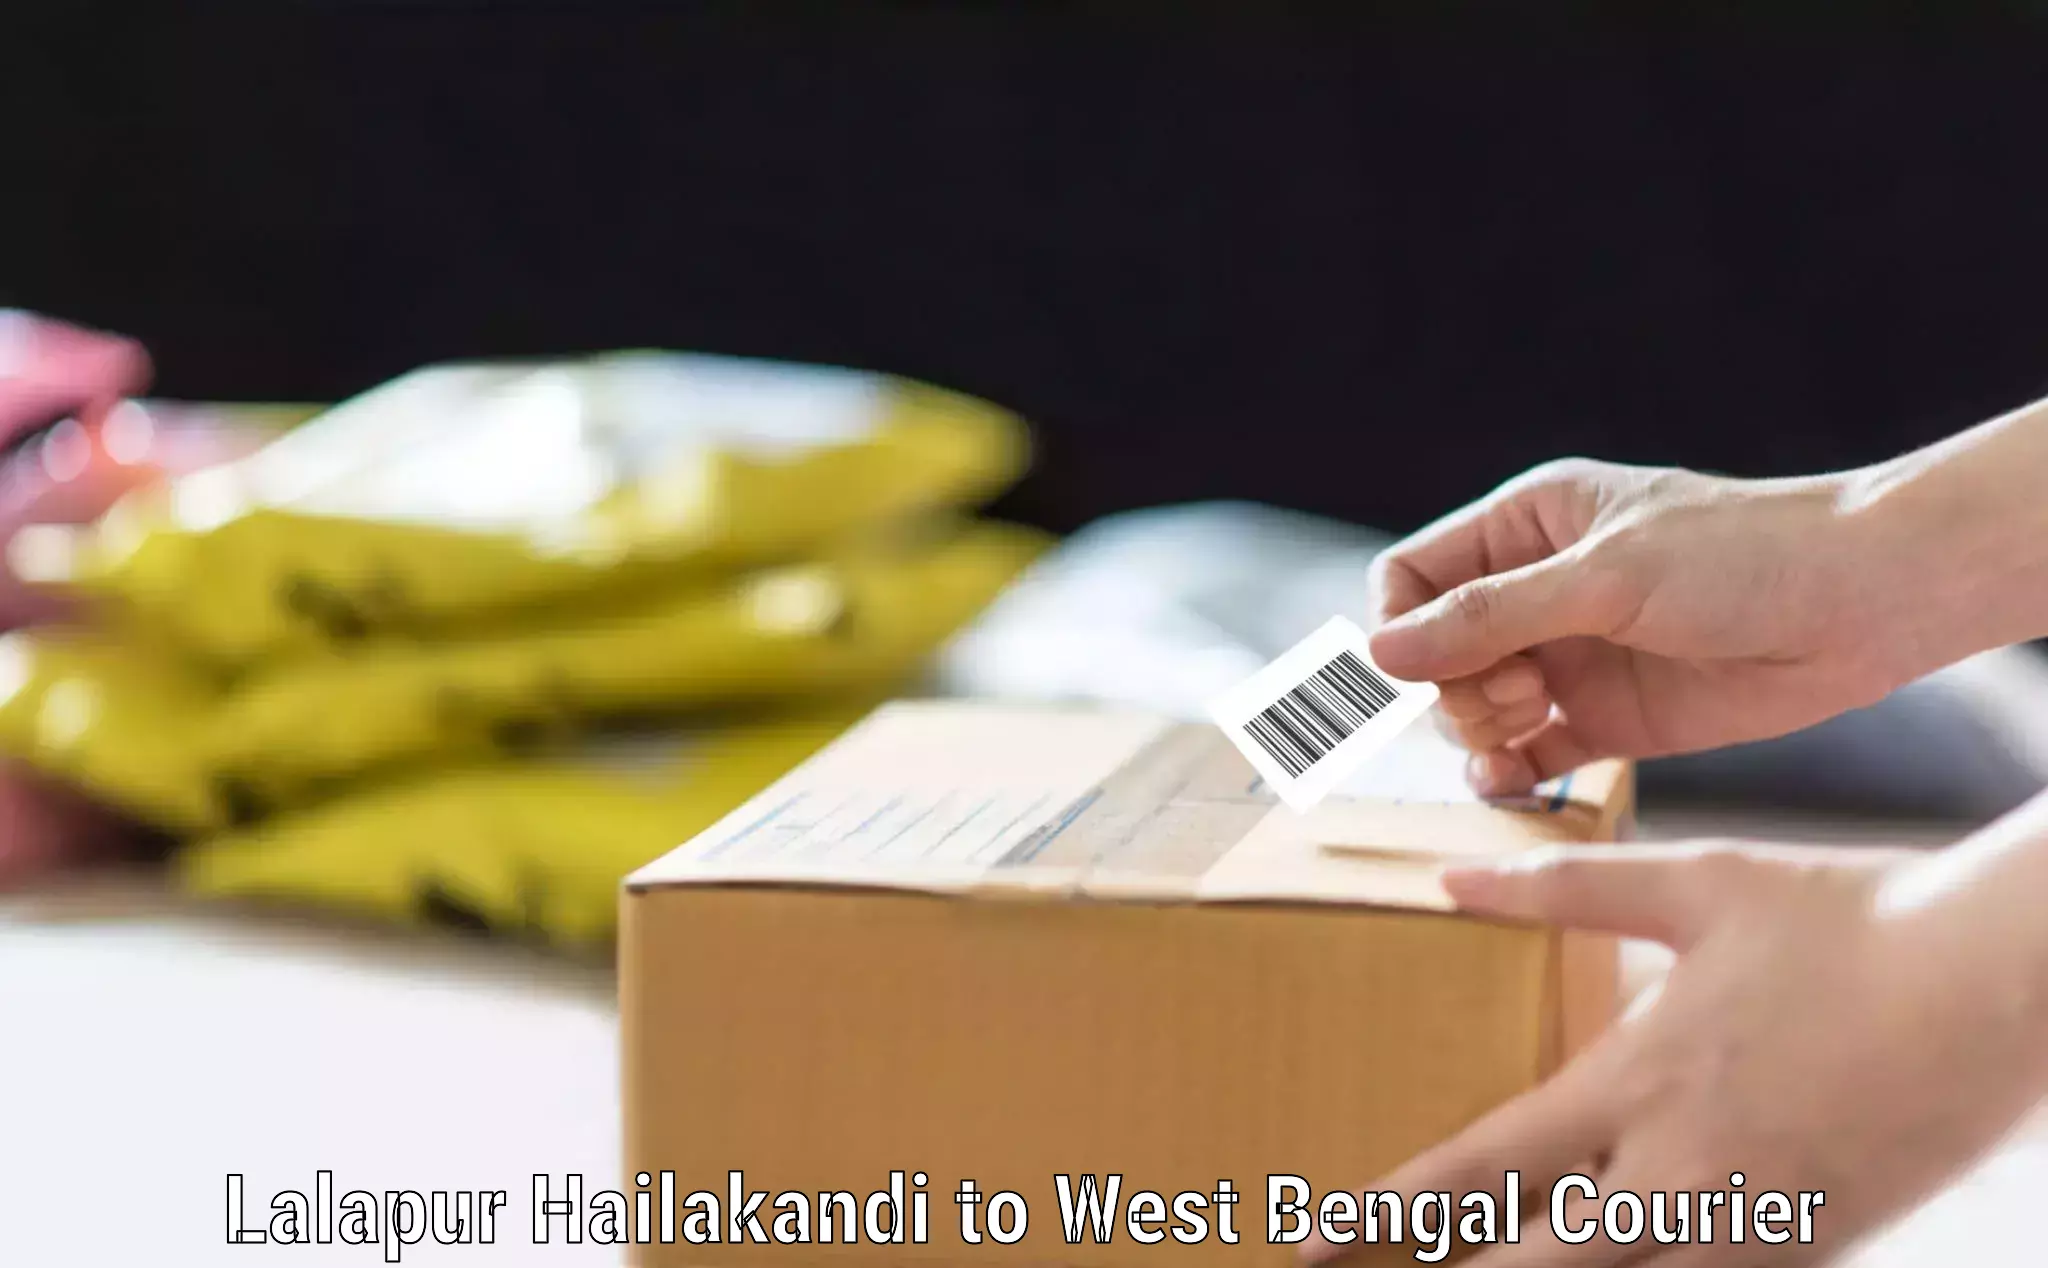 Luggage transfer service Lalapur Hailakandi to West Bengal